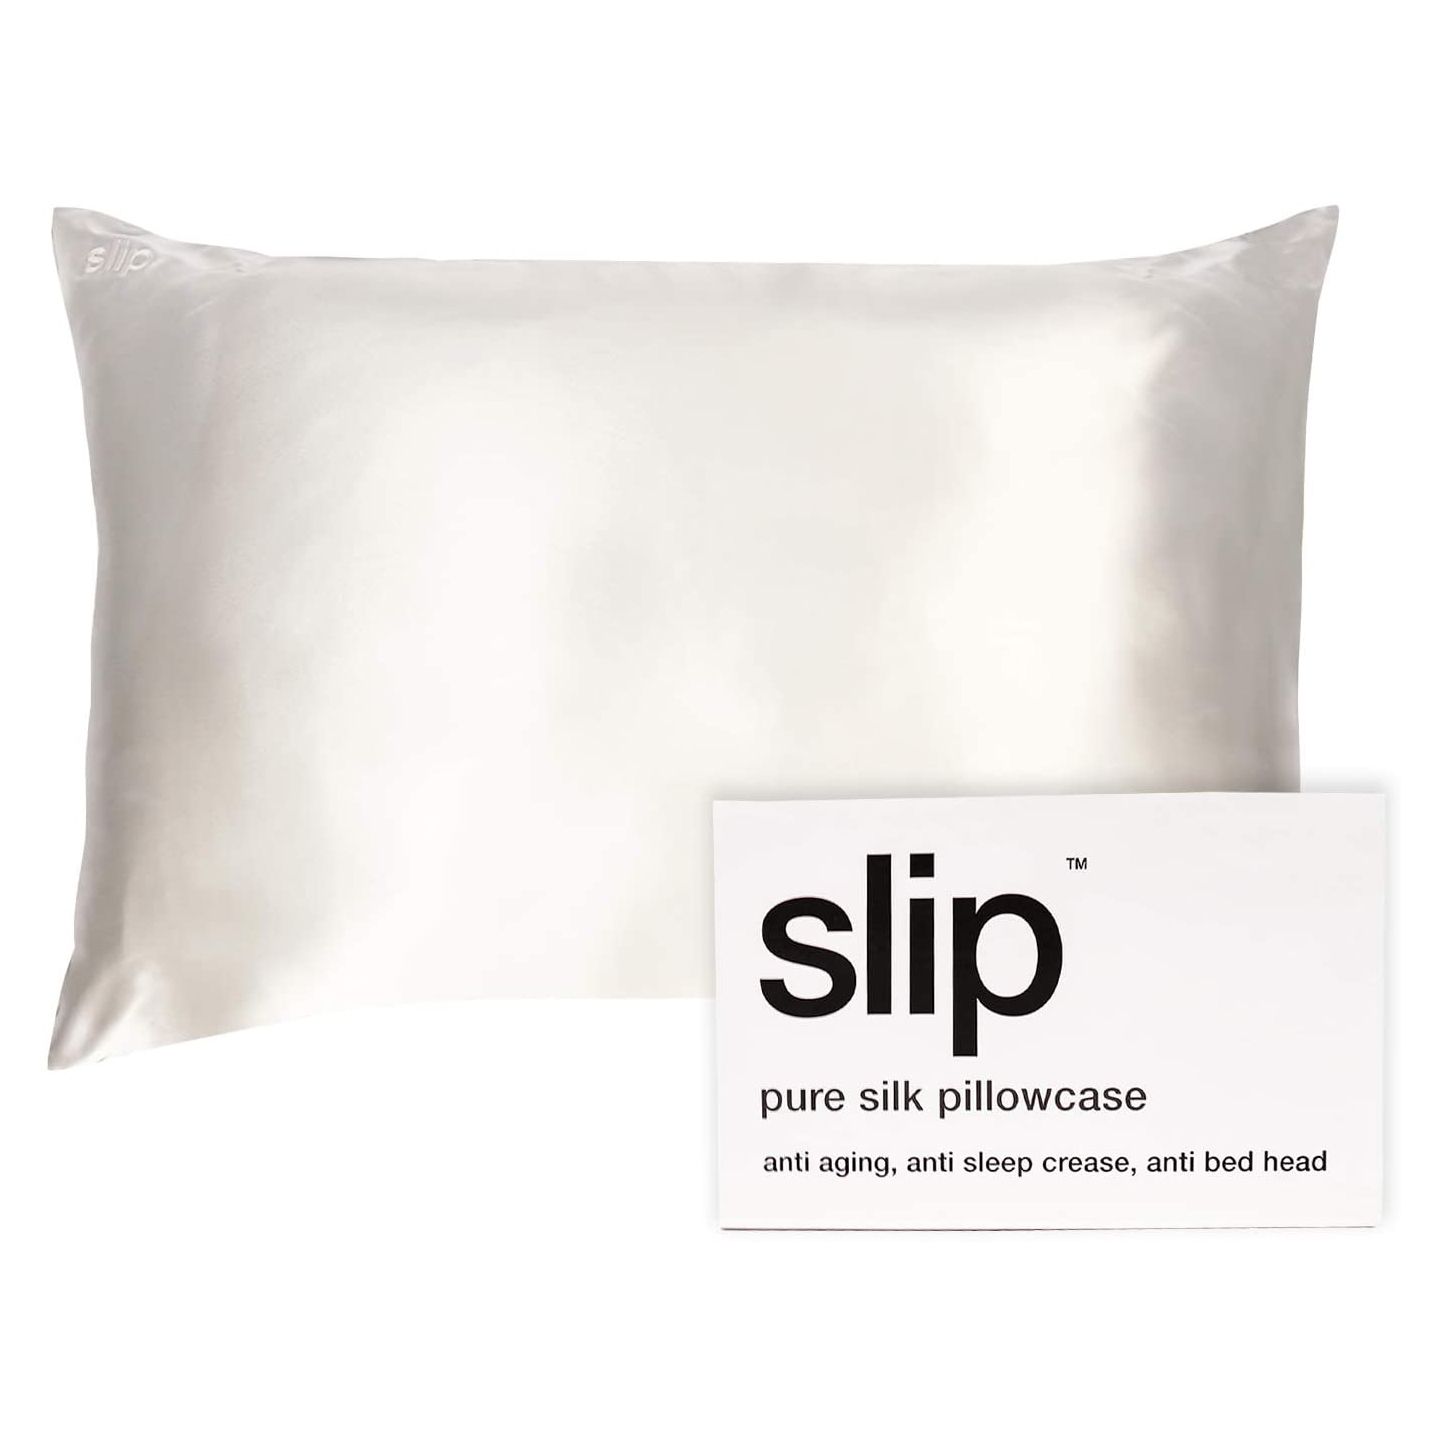 საუკეთესო საჩუქარი ბებიისთვის - SLIP Silk Pillowcase